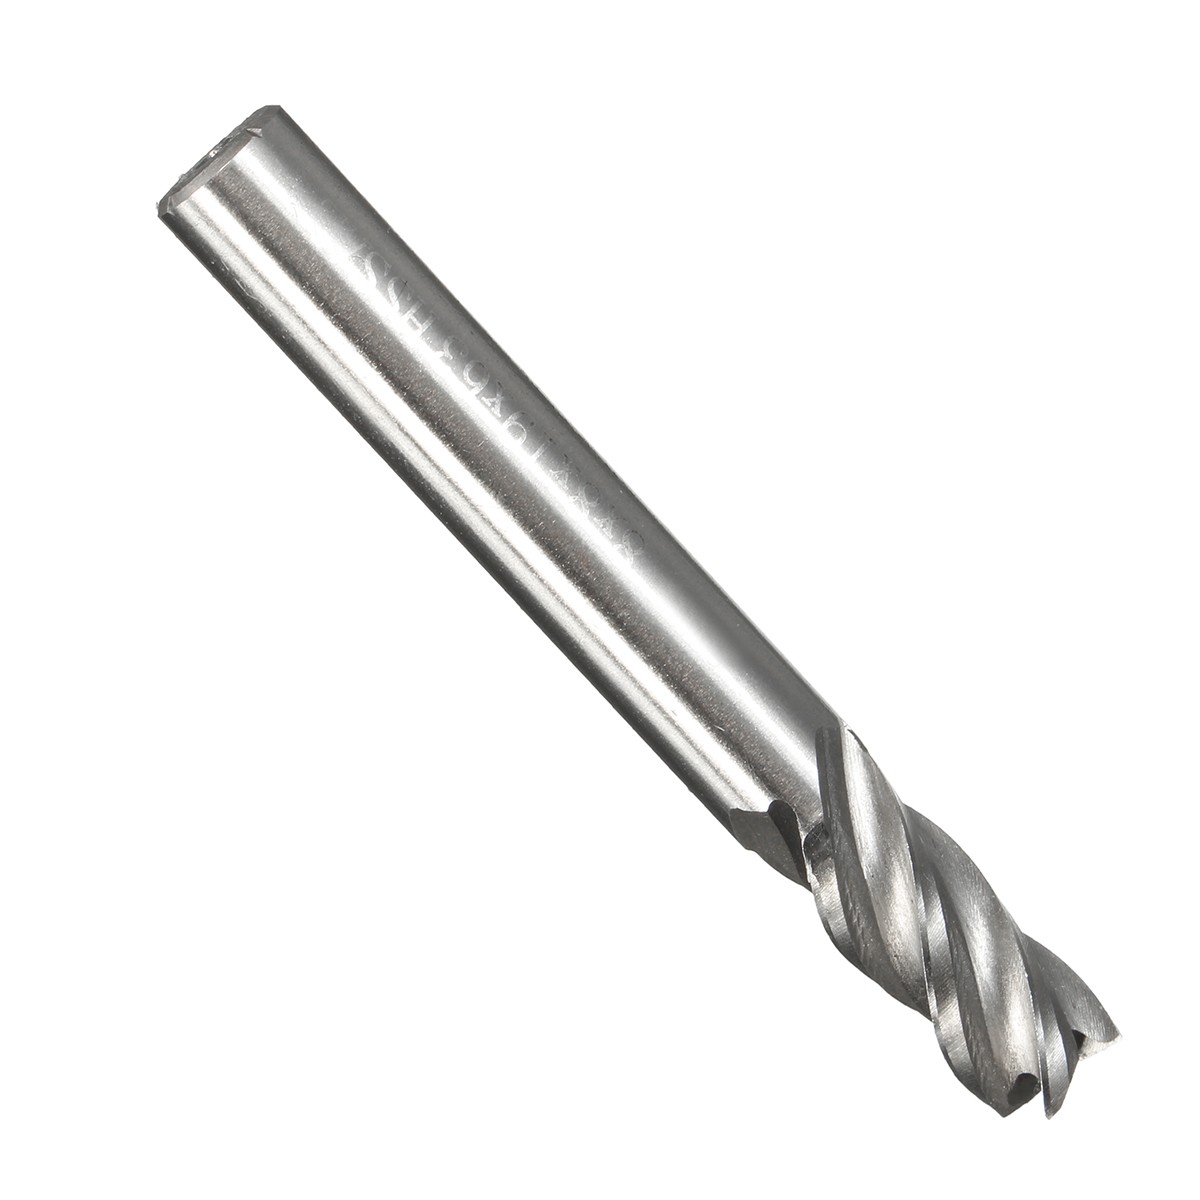 2-12mm-HSS-4-Flute-End-Mill-Cutter-Straight-Shank-Milling-Cutter-Drill-Bit-CNC-Tool-1116645-6